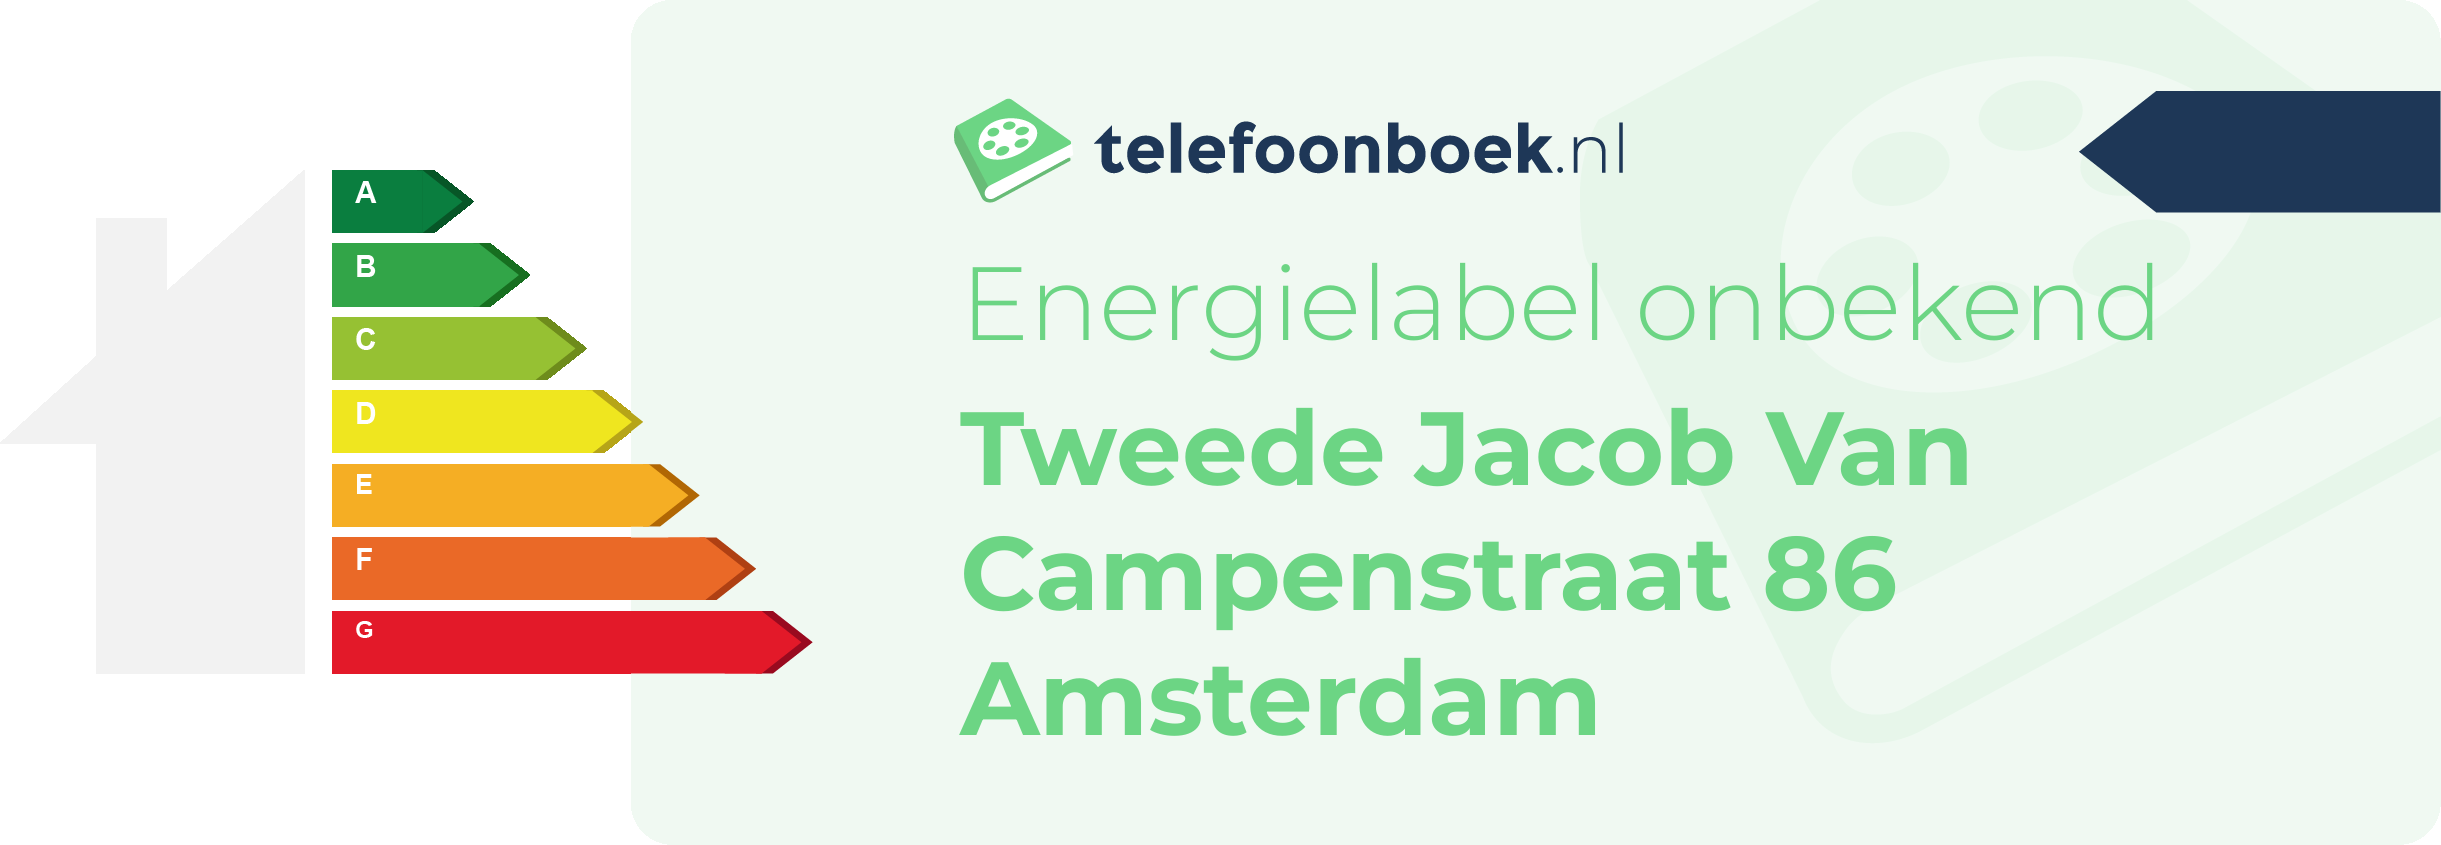 Energielabel Tweede Jacob Van Campenstraat 86 Amsterdam